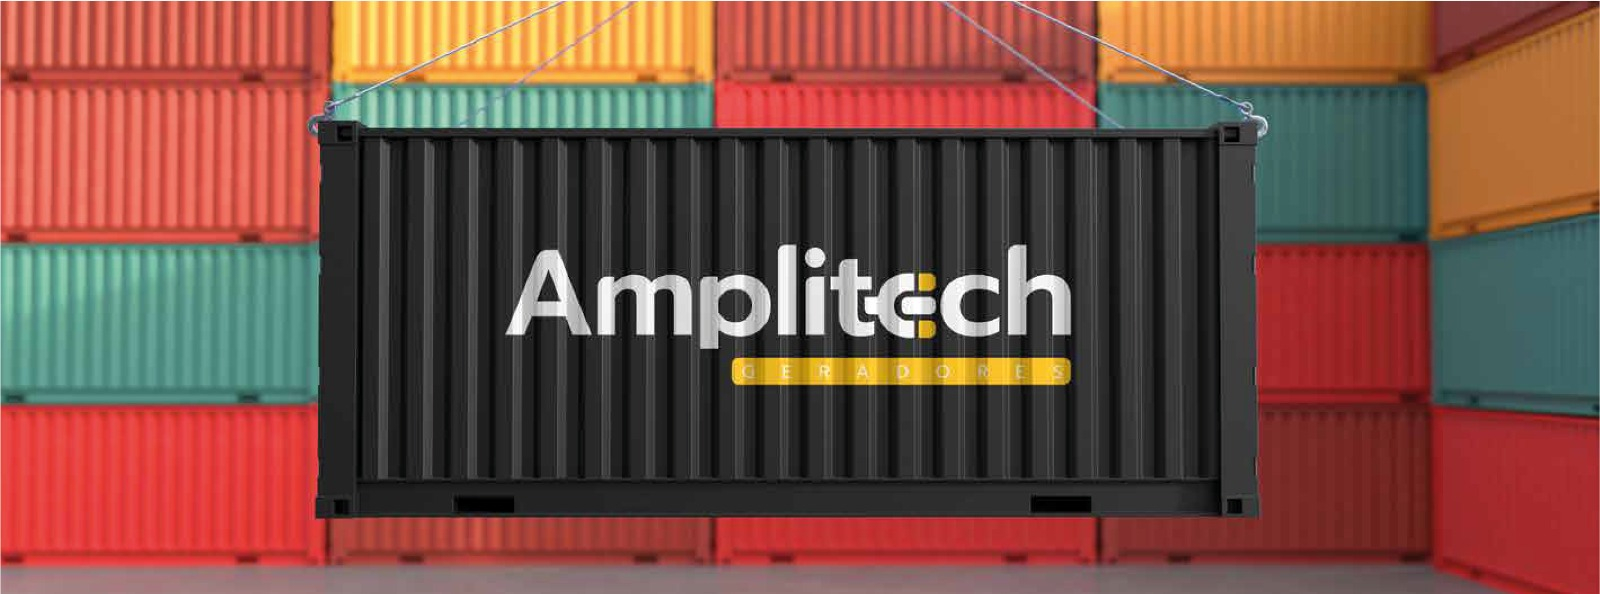 amplitech-banner1